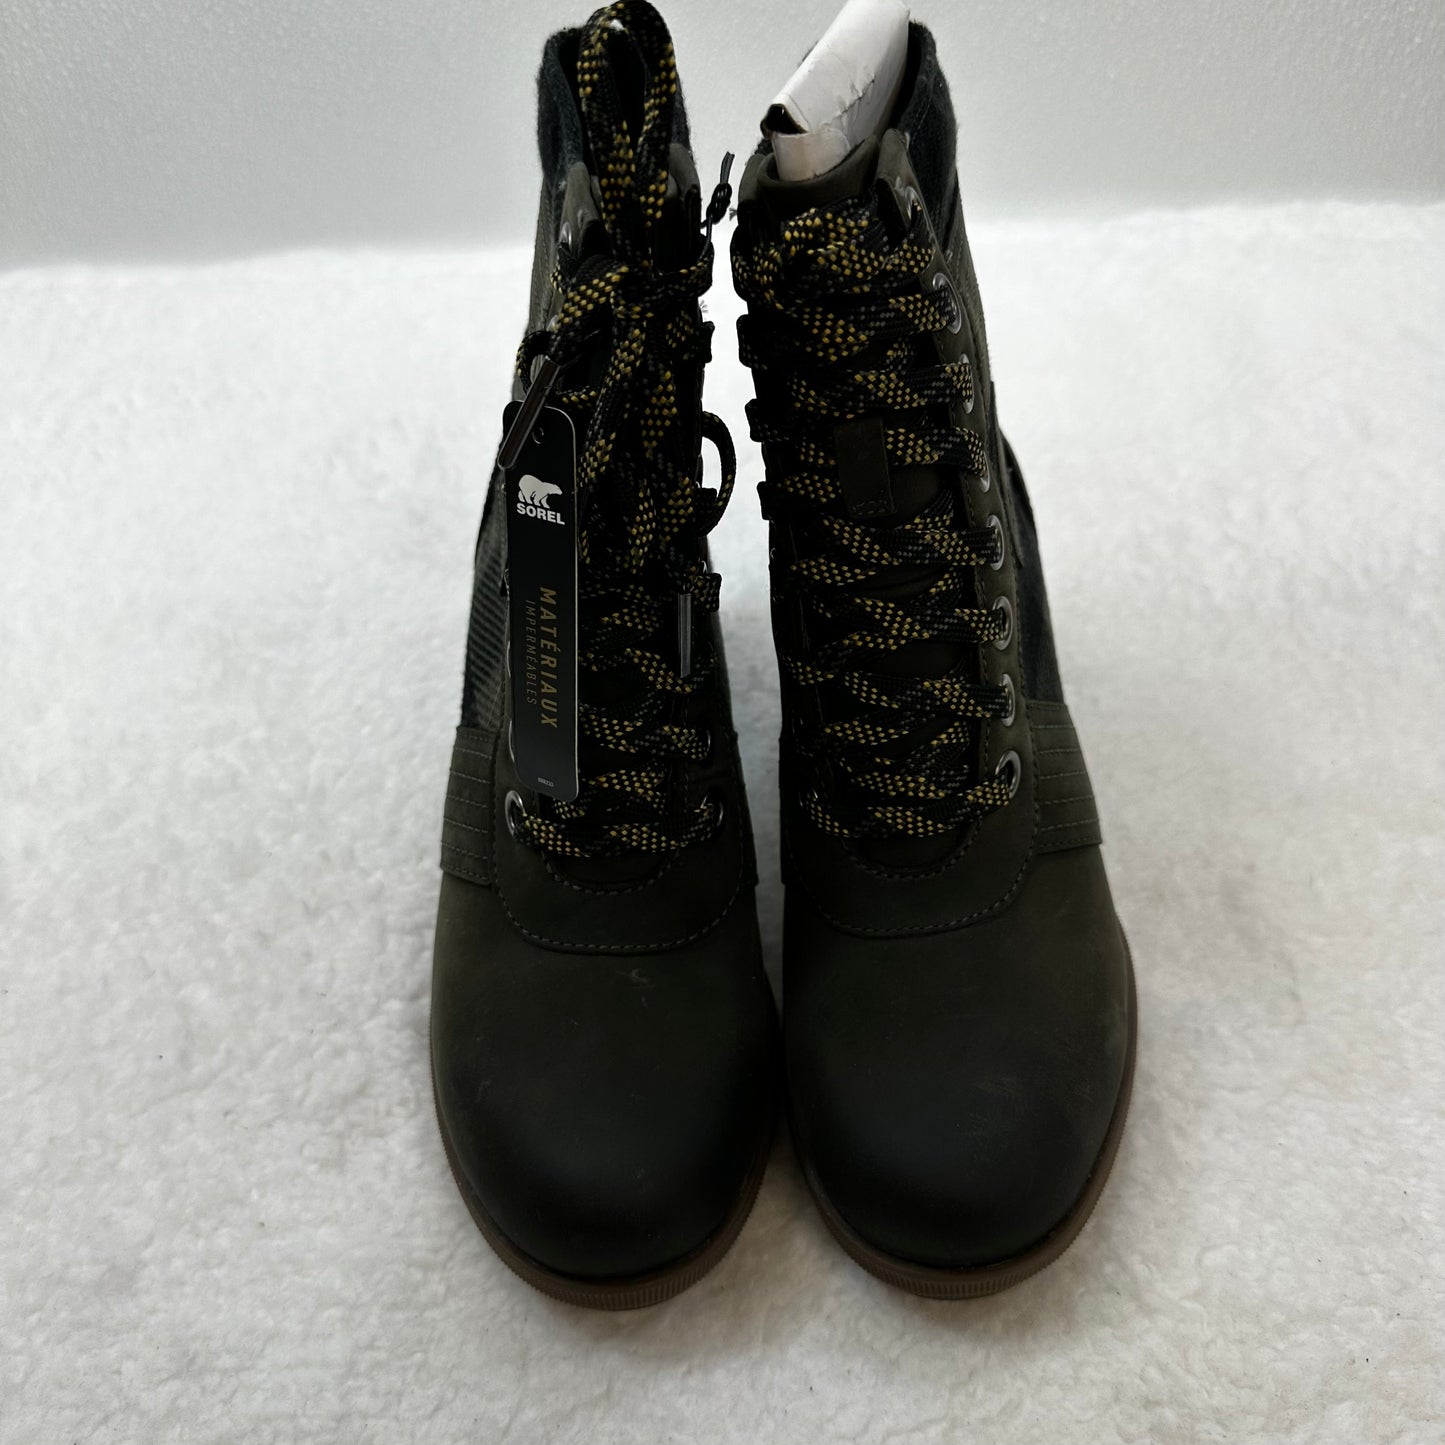 Olive Boots Ankle Heels Sorel, Size 6.5